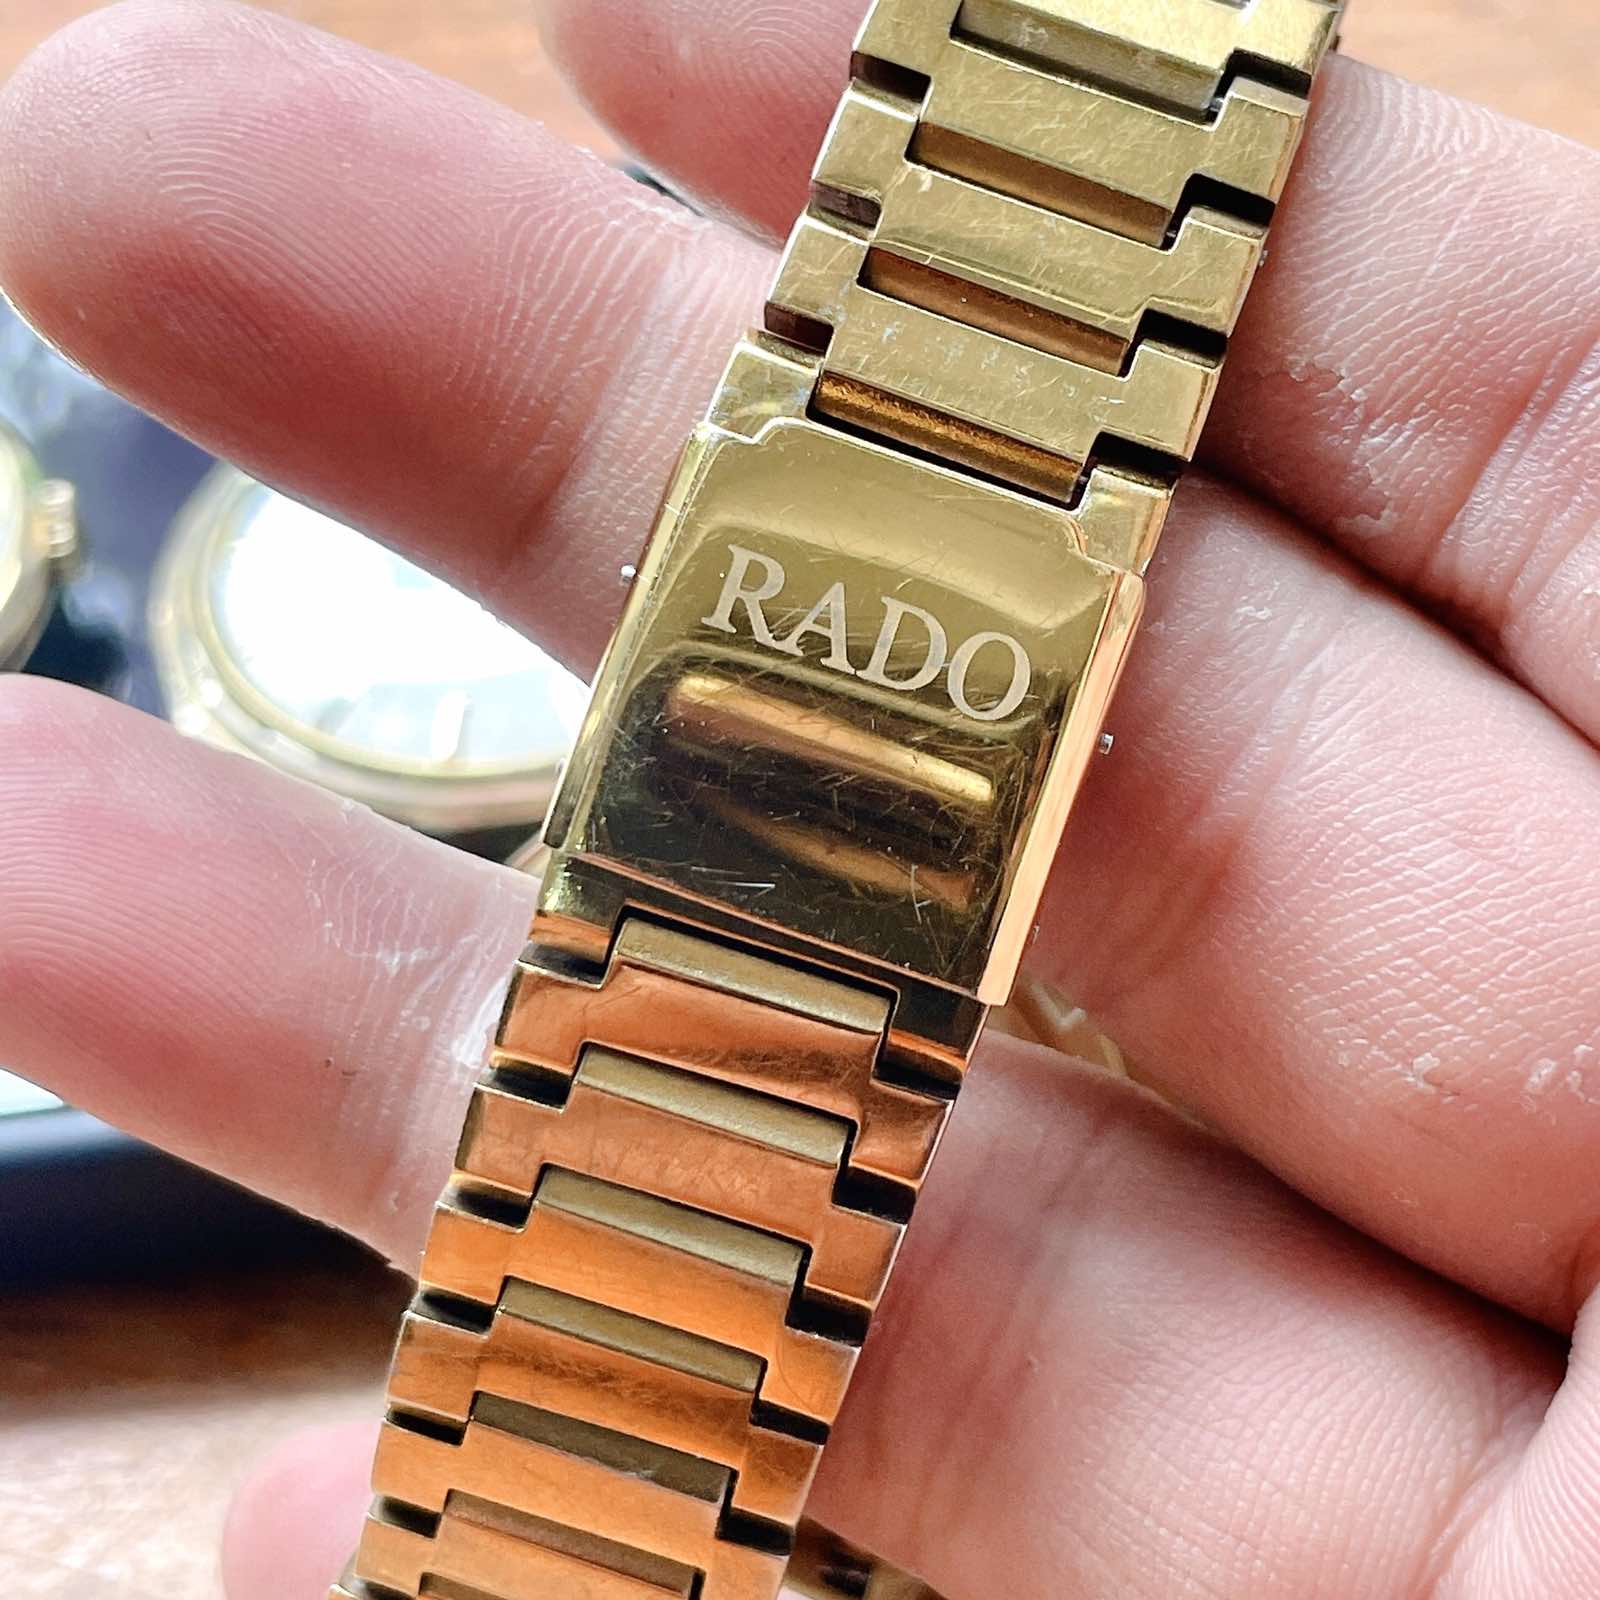 Đồng hồ Rado silver star Automatic chính hãng 